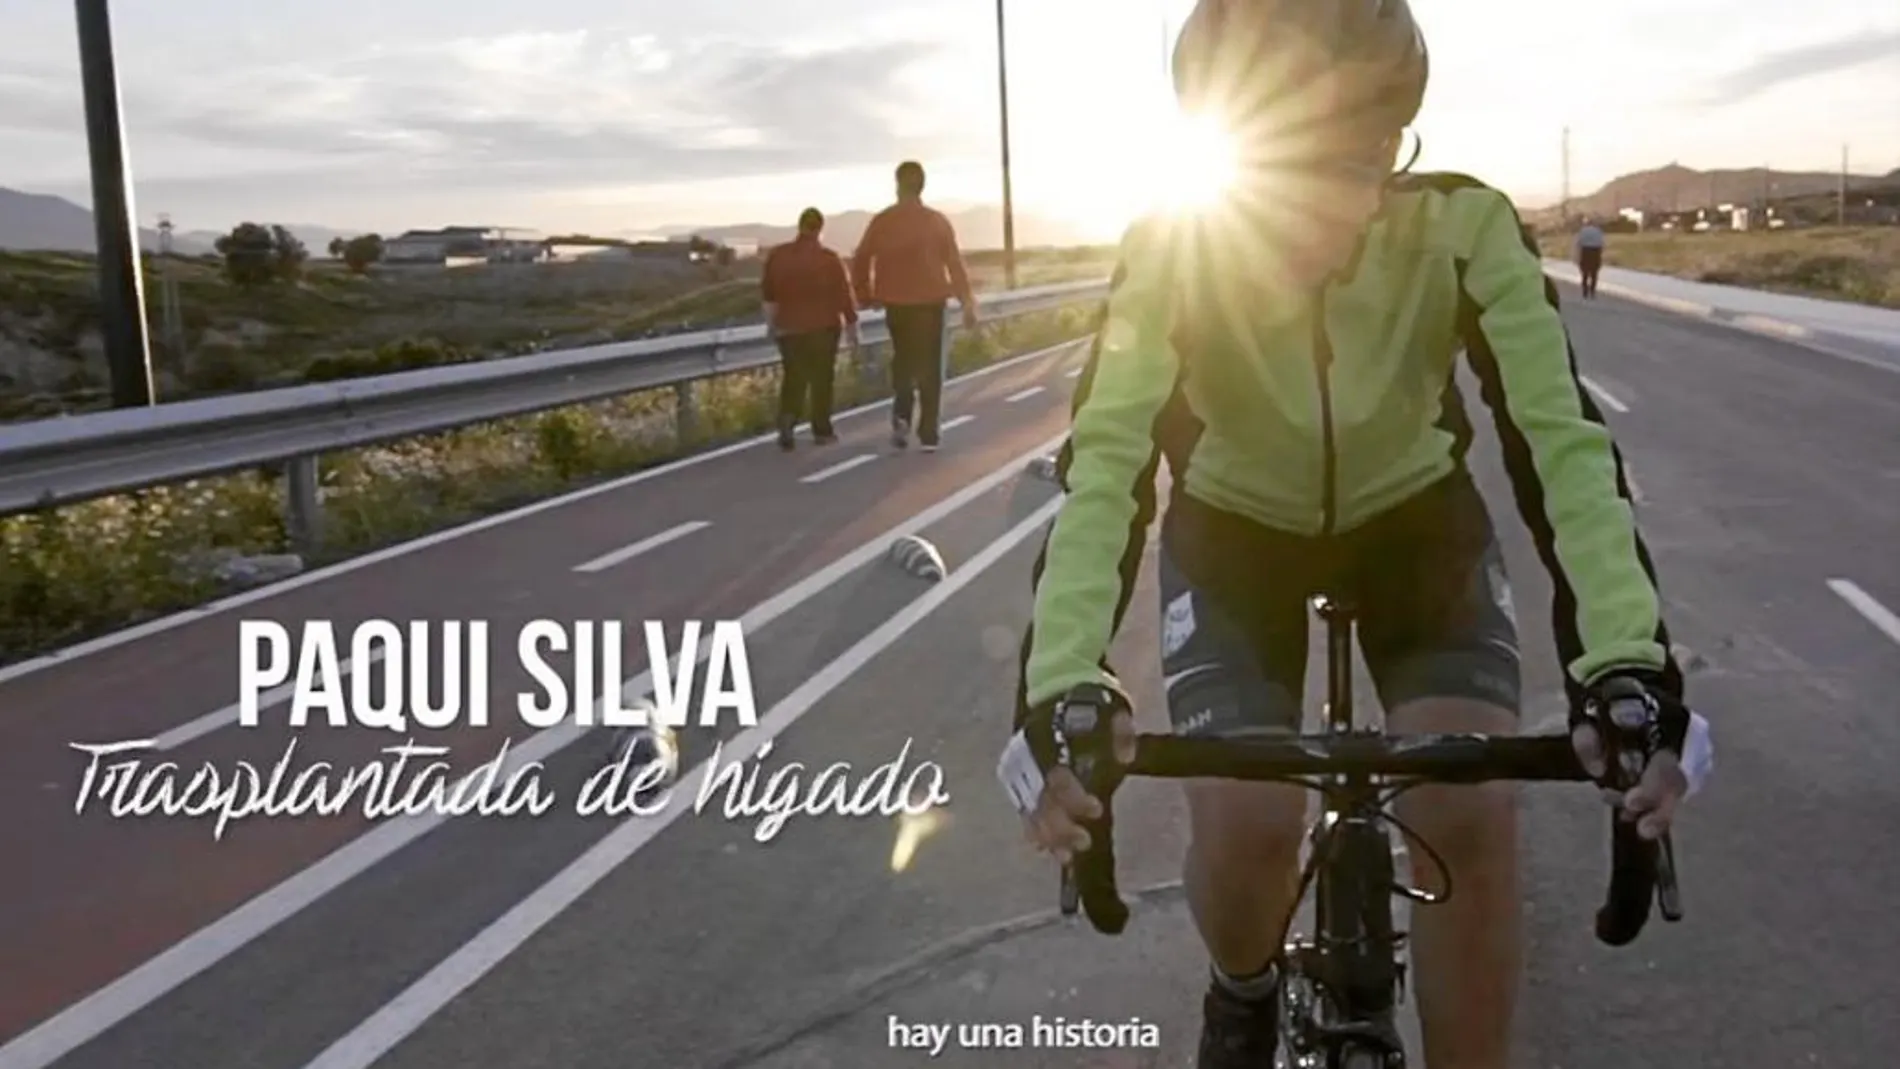 Paqui Silva es una de los 77 deportistas españoles que participarán en esta competición el próximo 25 de junio, que se celebrará por primera vez en España y a la que acudirán 2.218 atletas trasplantados de 52 países distintos.